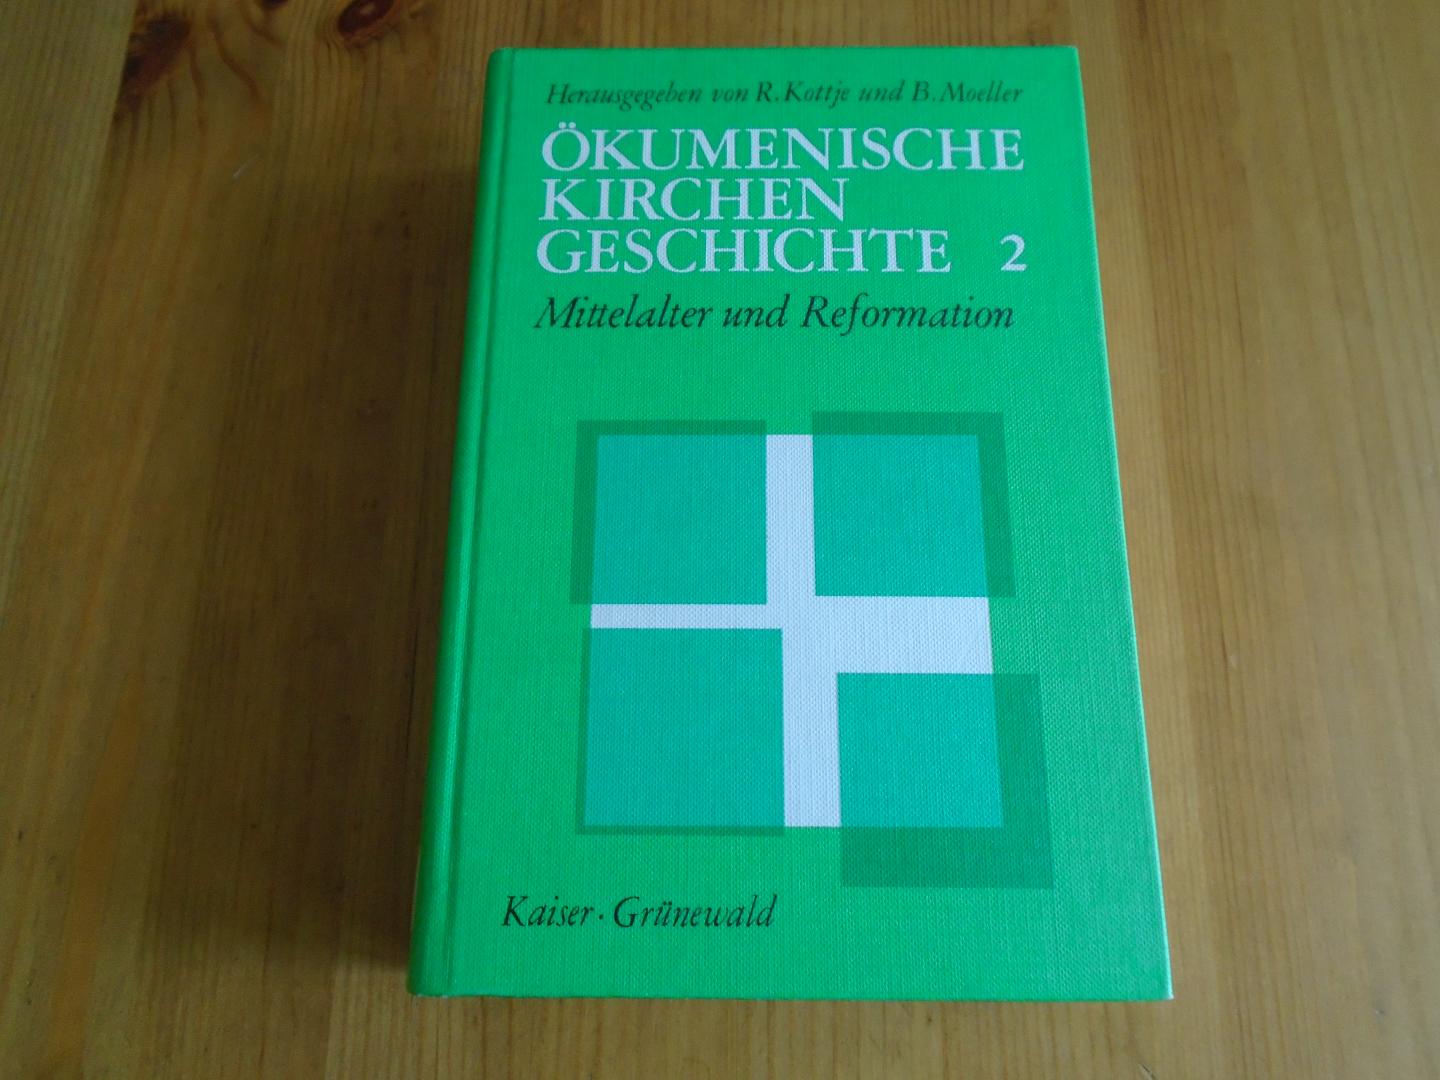 Kottje, R. / B. Moeller - Ökumenische Kirchengeschichte. 1. Alte Kirche und Ostkirche; 2. Mittelalter und Reformation; 3. Neuzeit